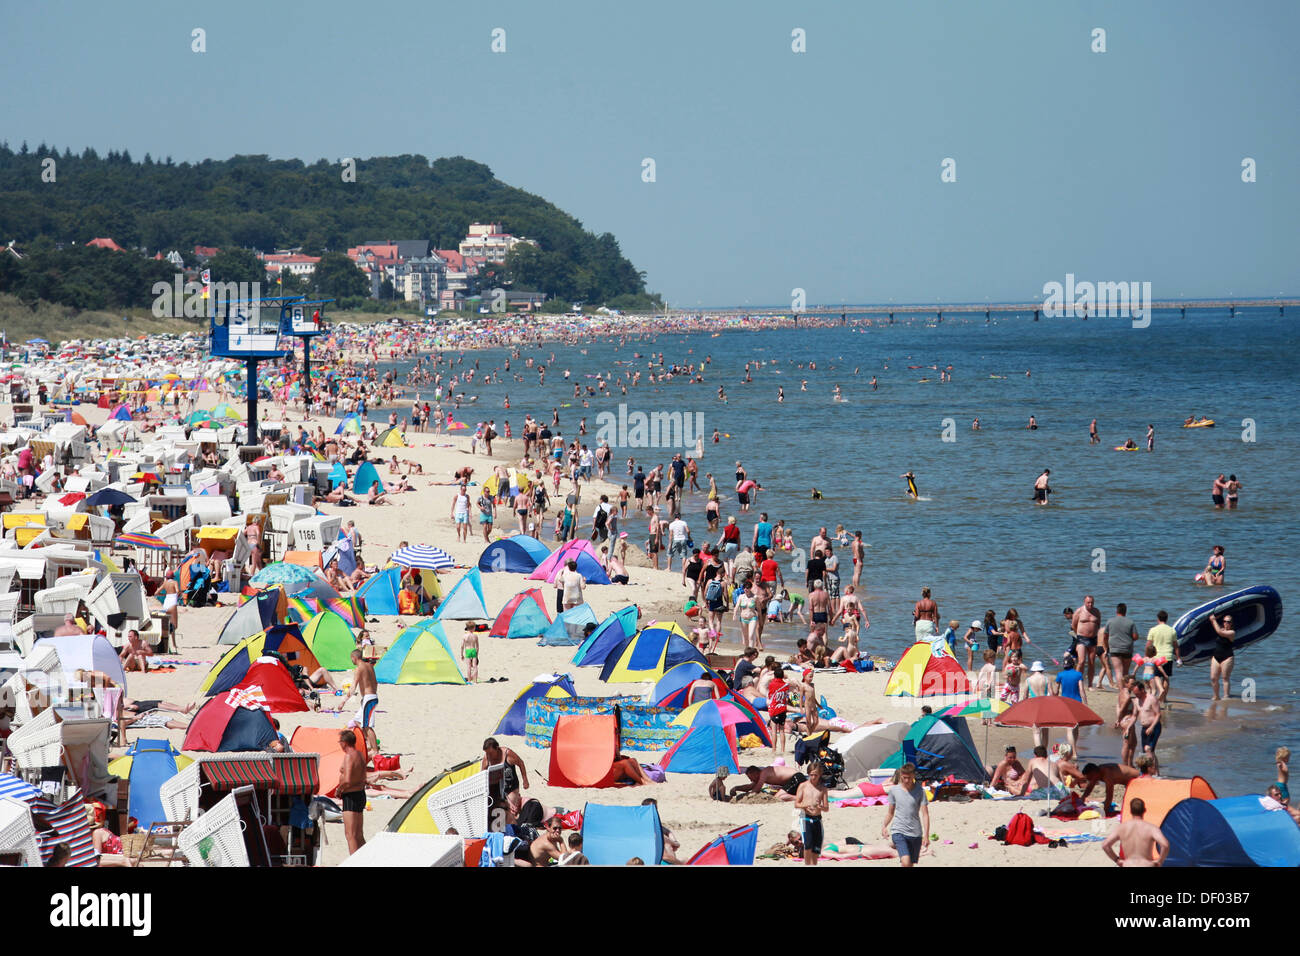 Des foules de gens sur la plage de la mer Baltique, Heringsdorf, Mecklembourg-Poméranie-Occidentale, Allemagne Banque D'Images